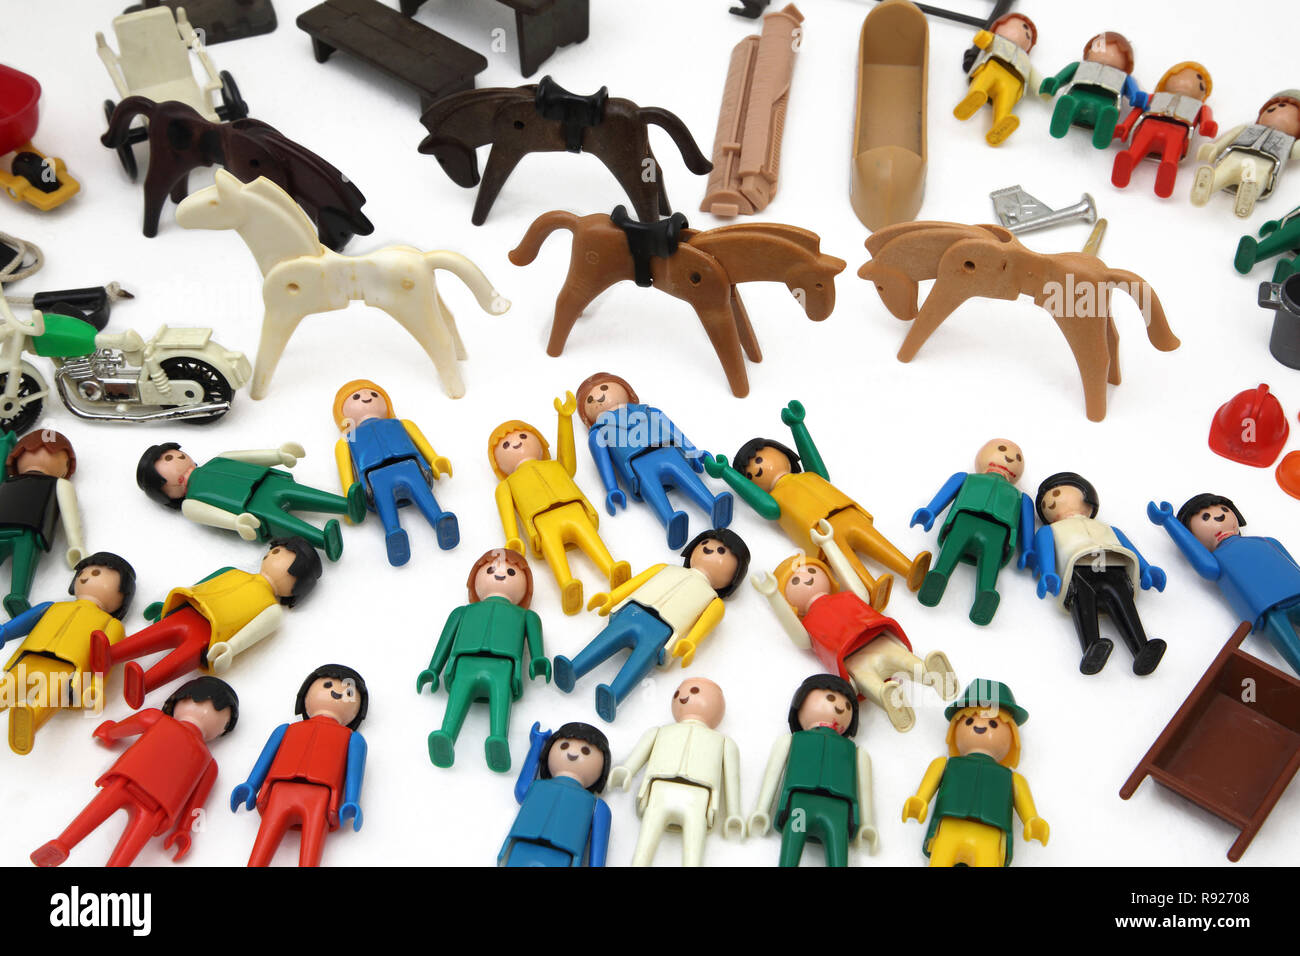 Playmobil figures -Fotos und -Bildmaterial in hoher Auflösung - Seite 2 -  Alamy